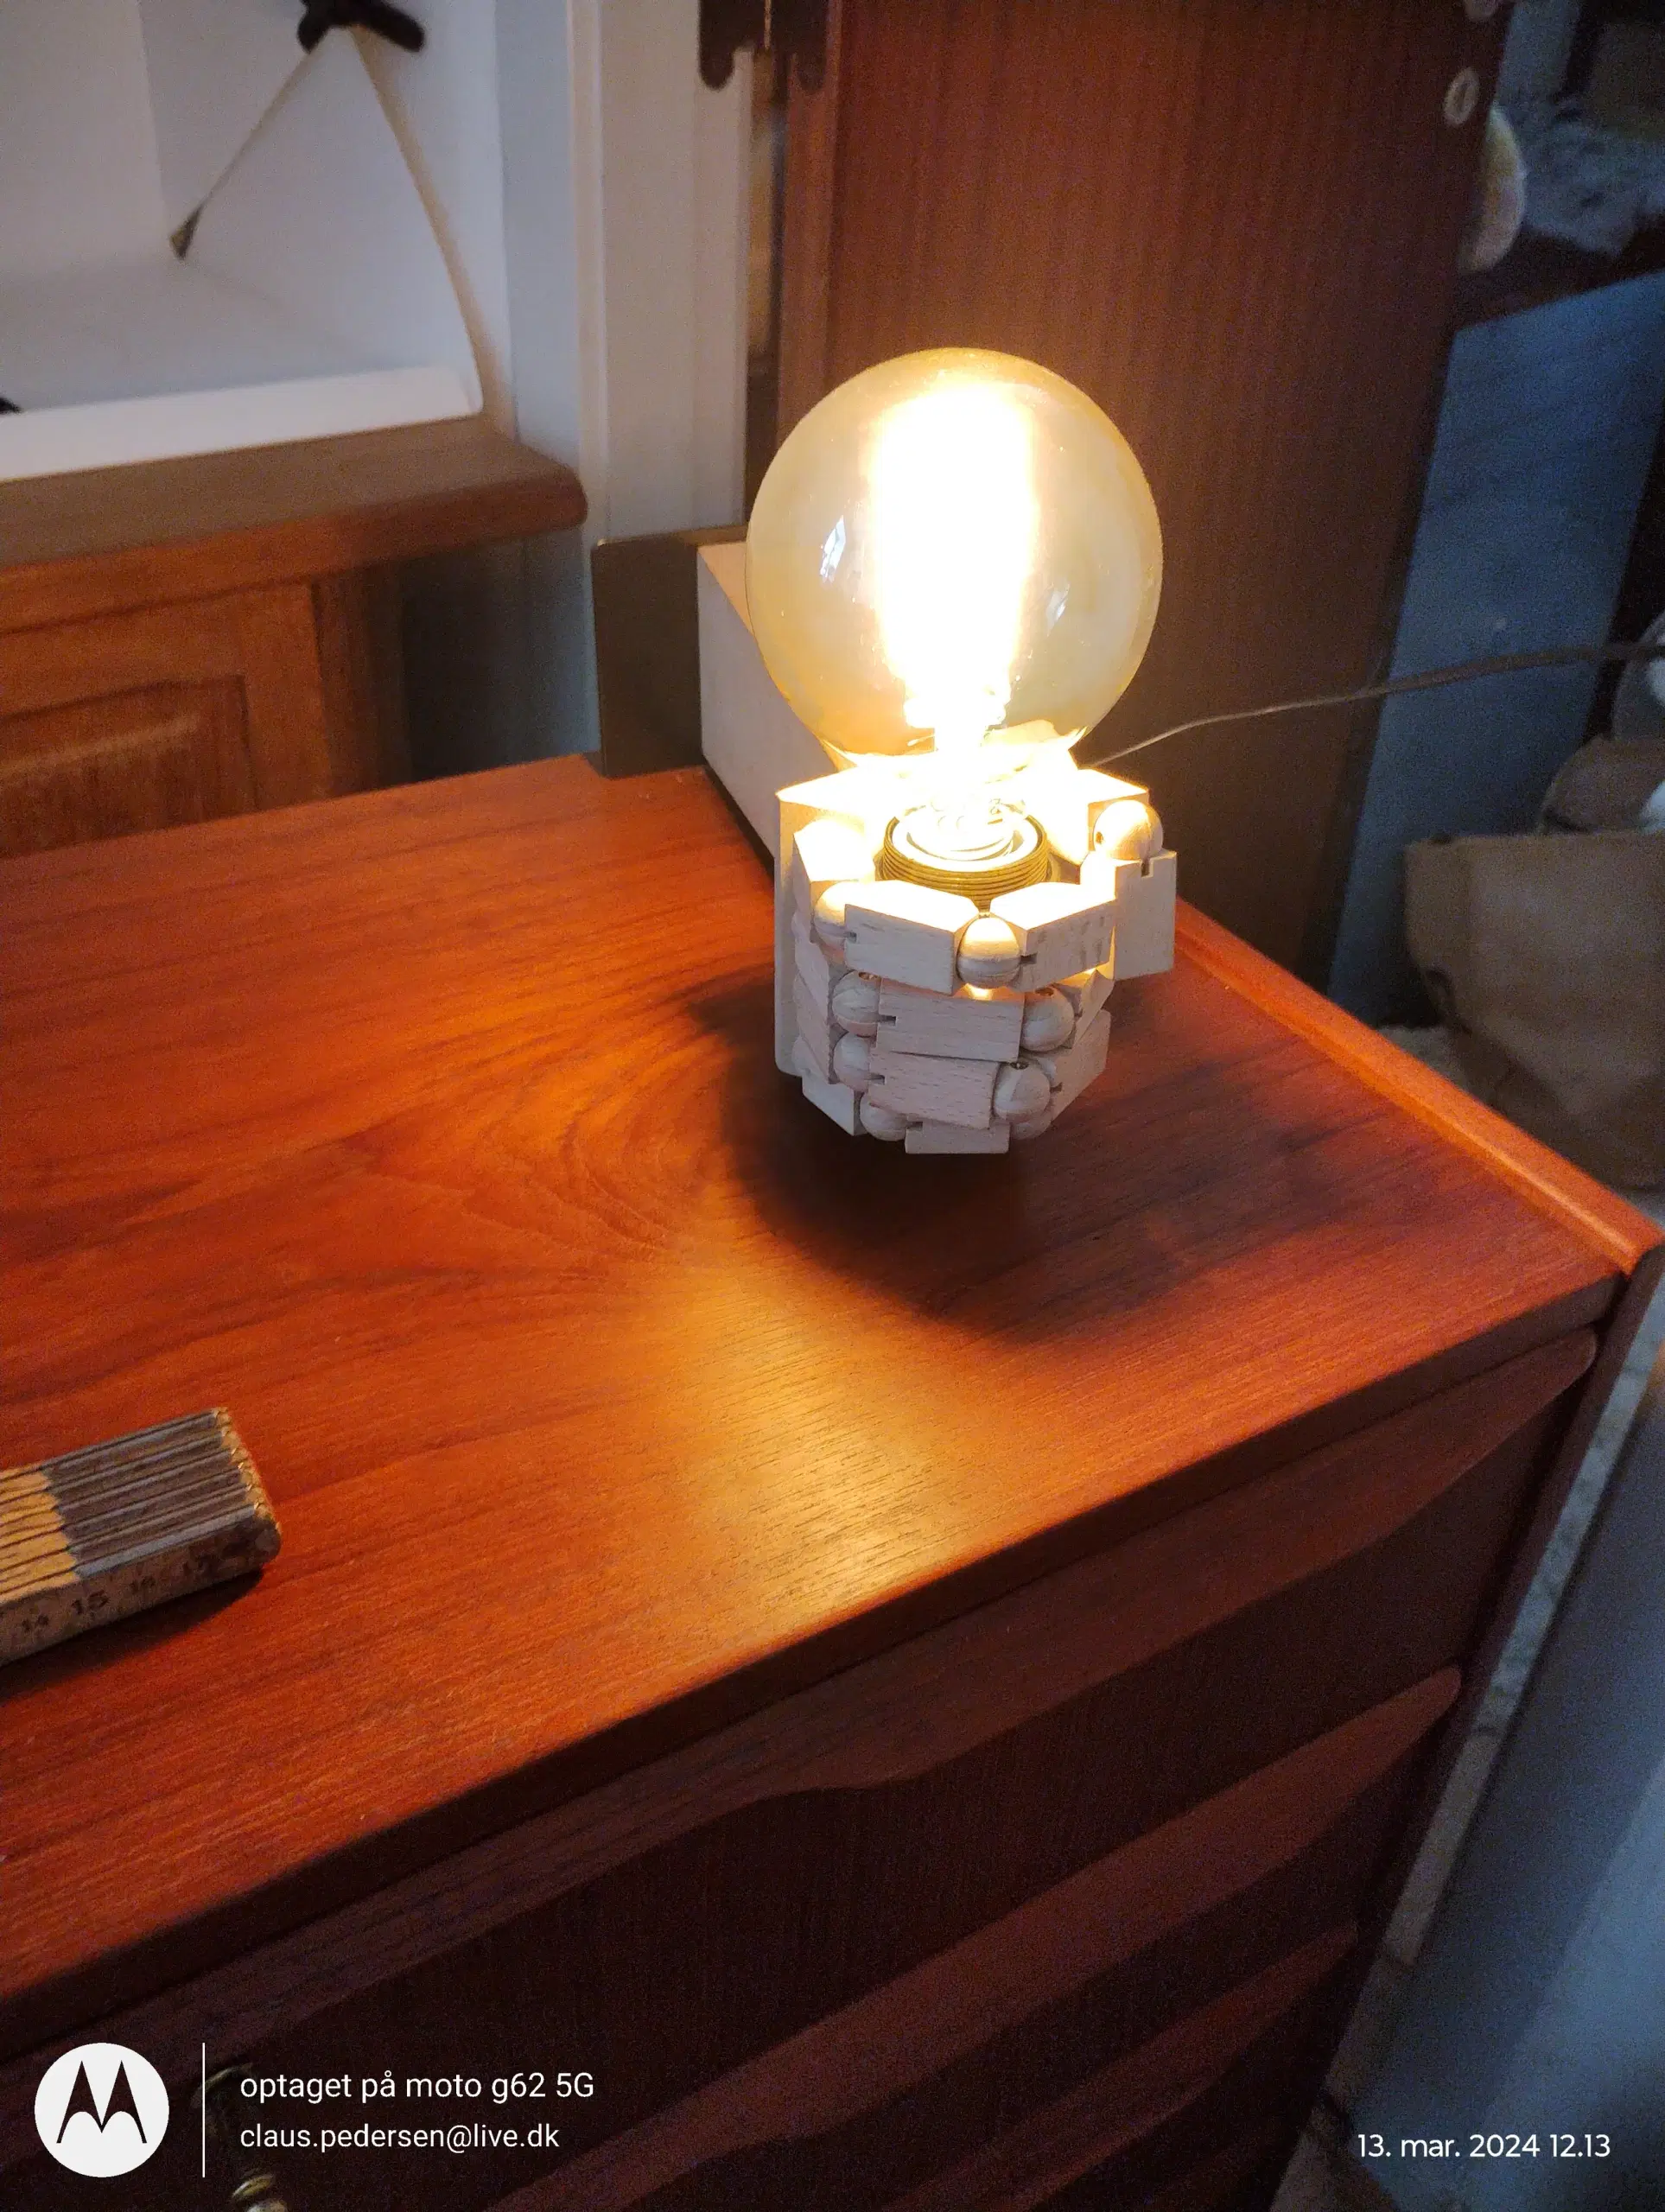 The "Wood Fist" Væglampe - Loftslampe